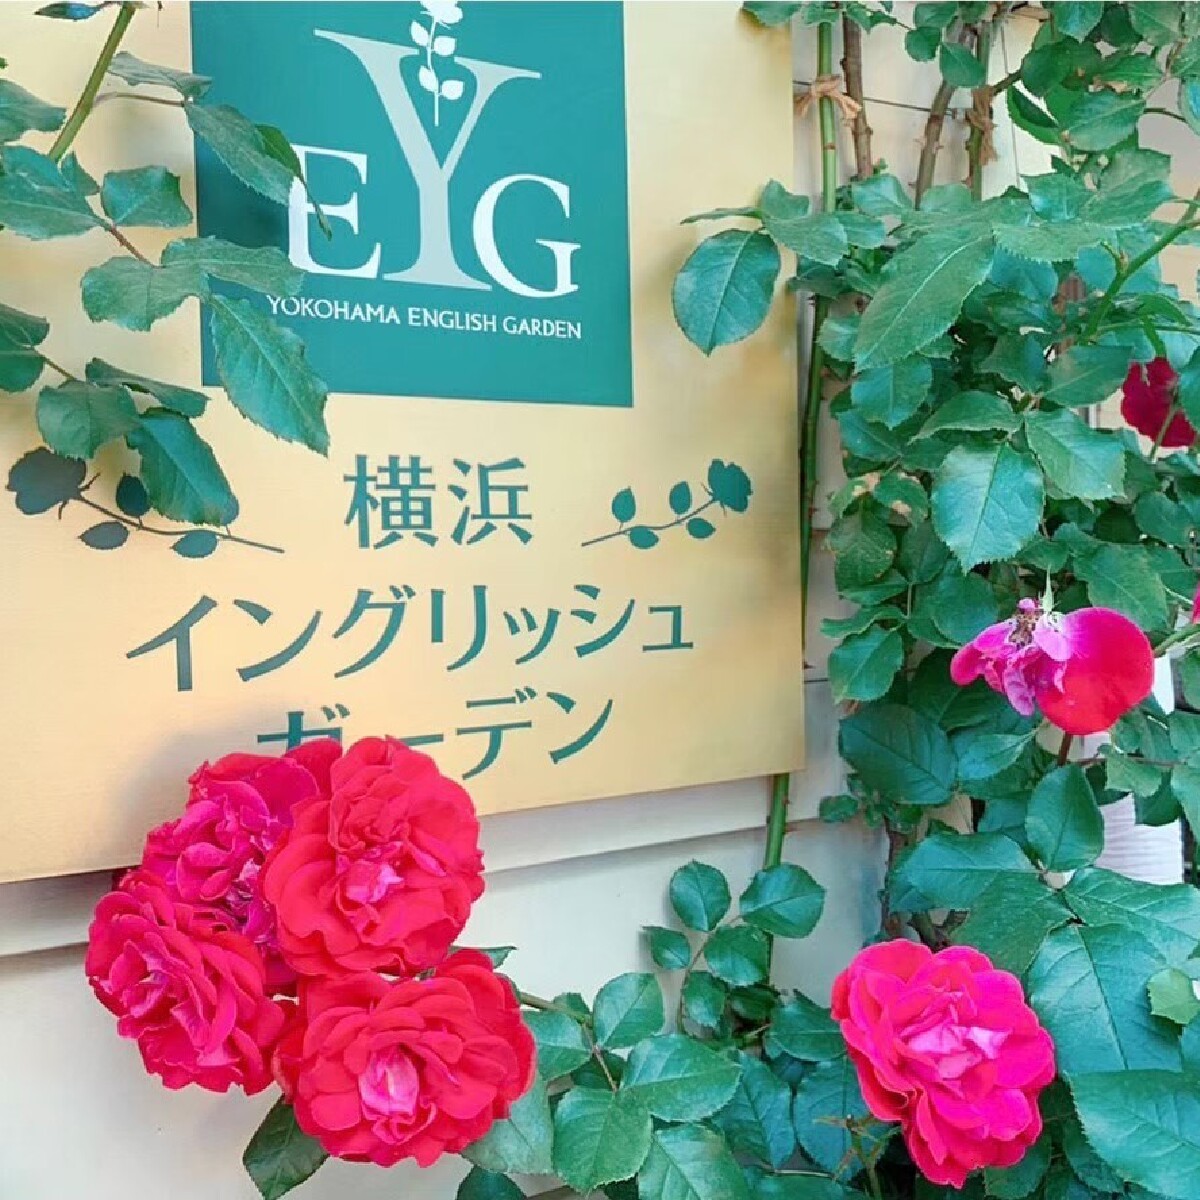 【神奈川】バラに囲まれた優雅なひとときを…横浜イングリッシュガーデン